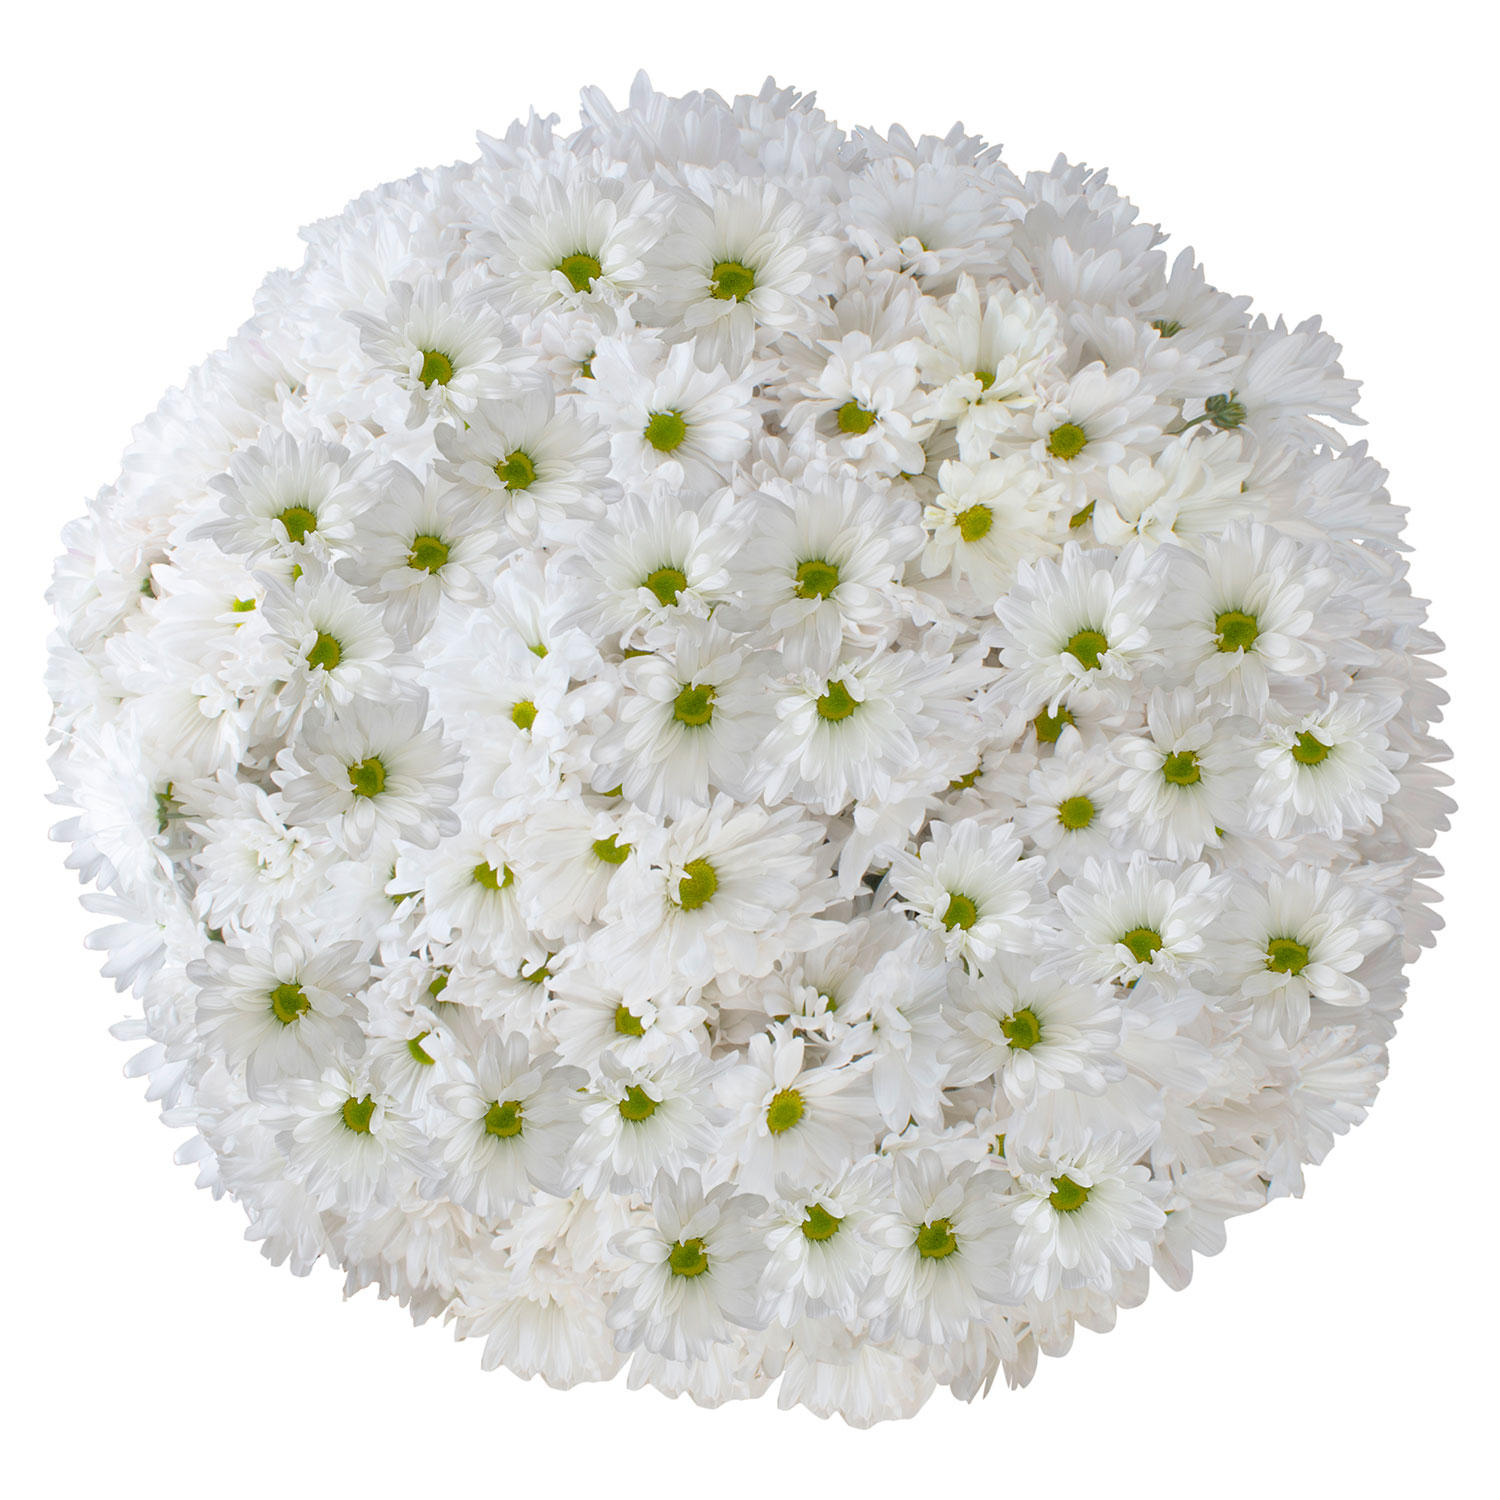 Member's Mark Pompon Daisies, 90 stems (White)